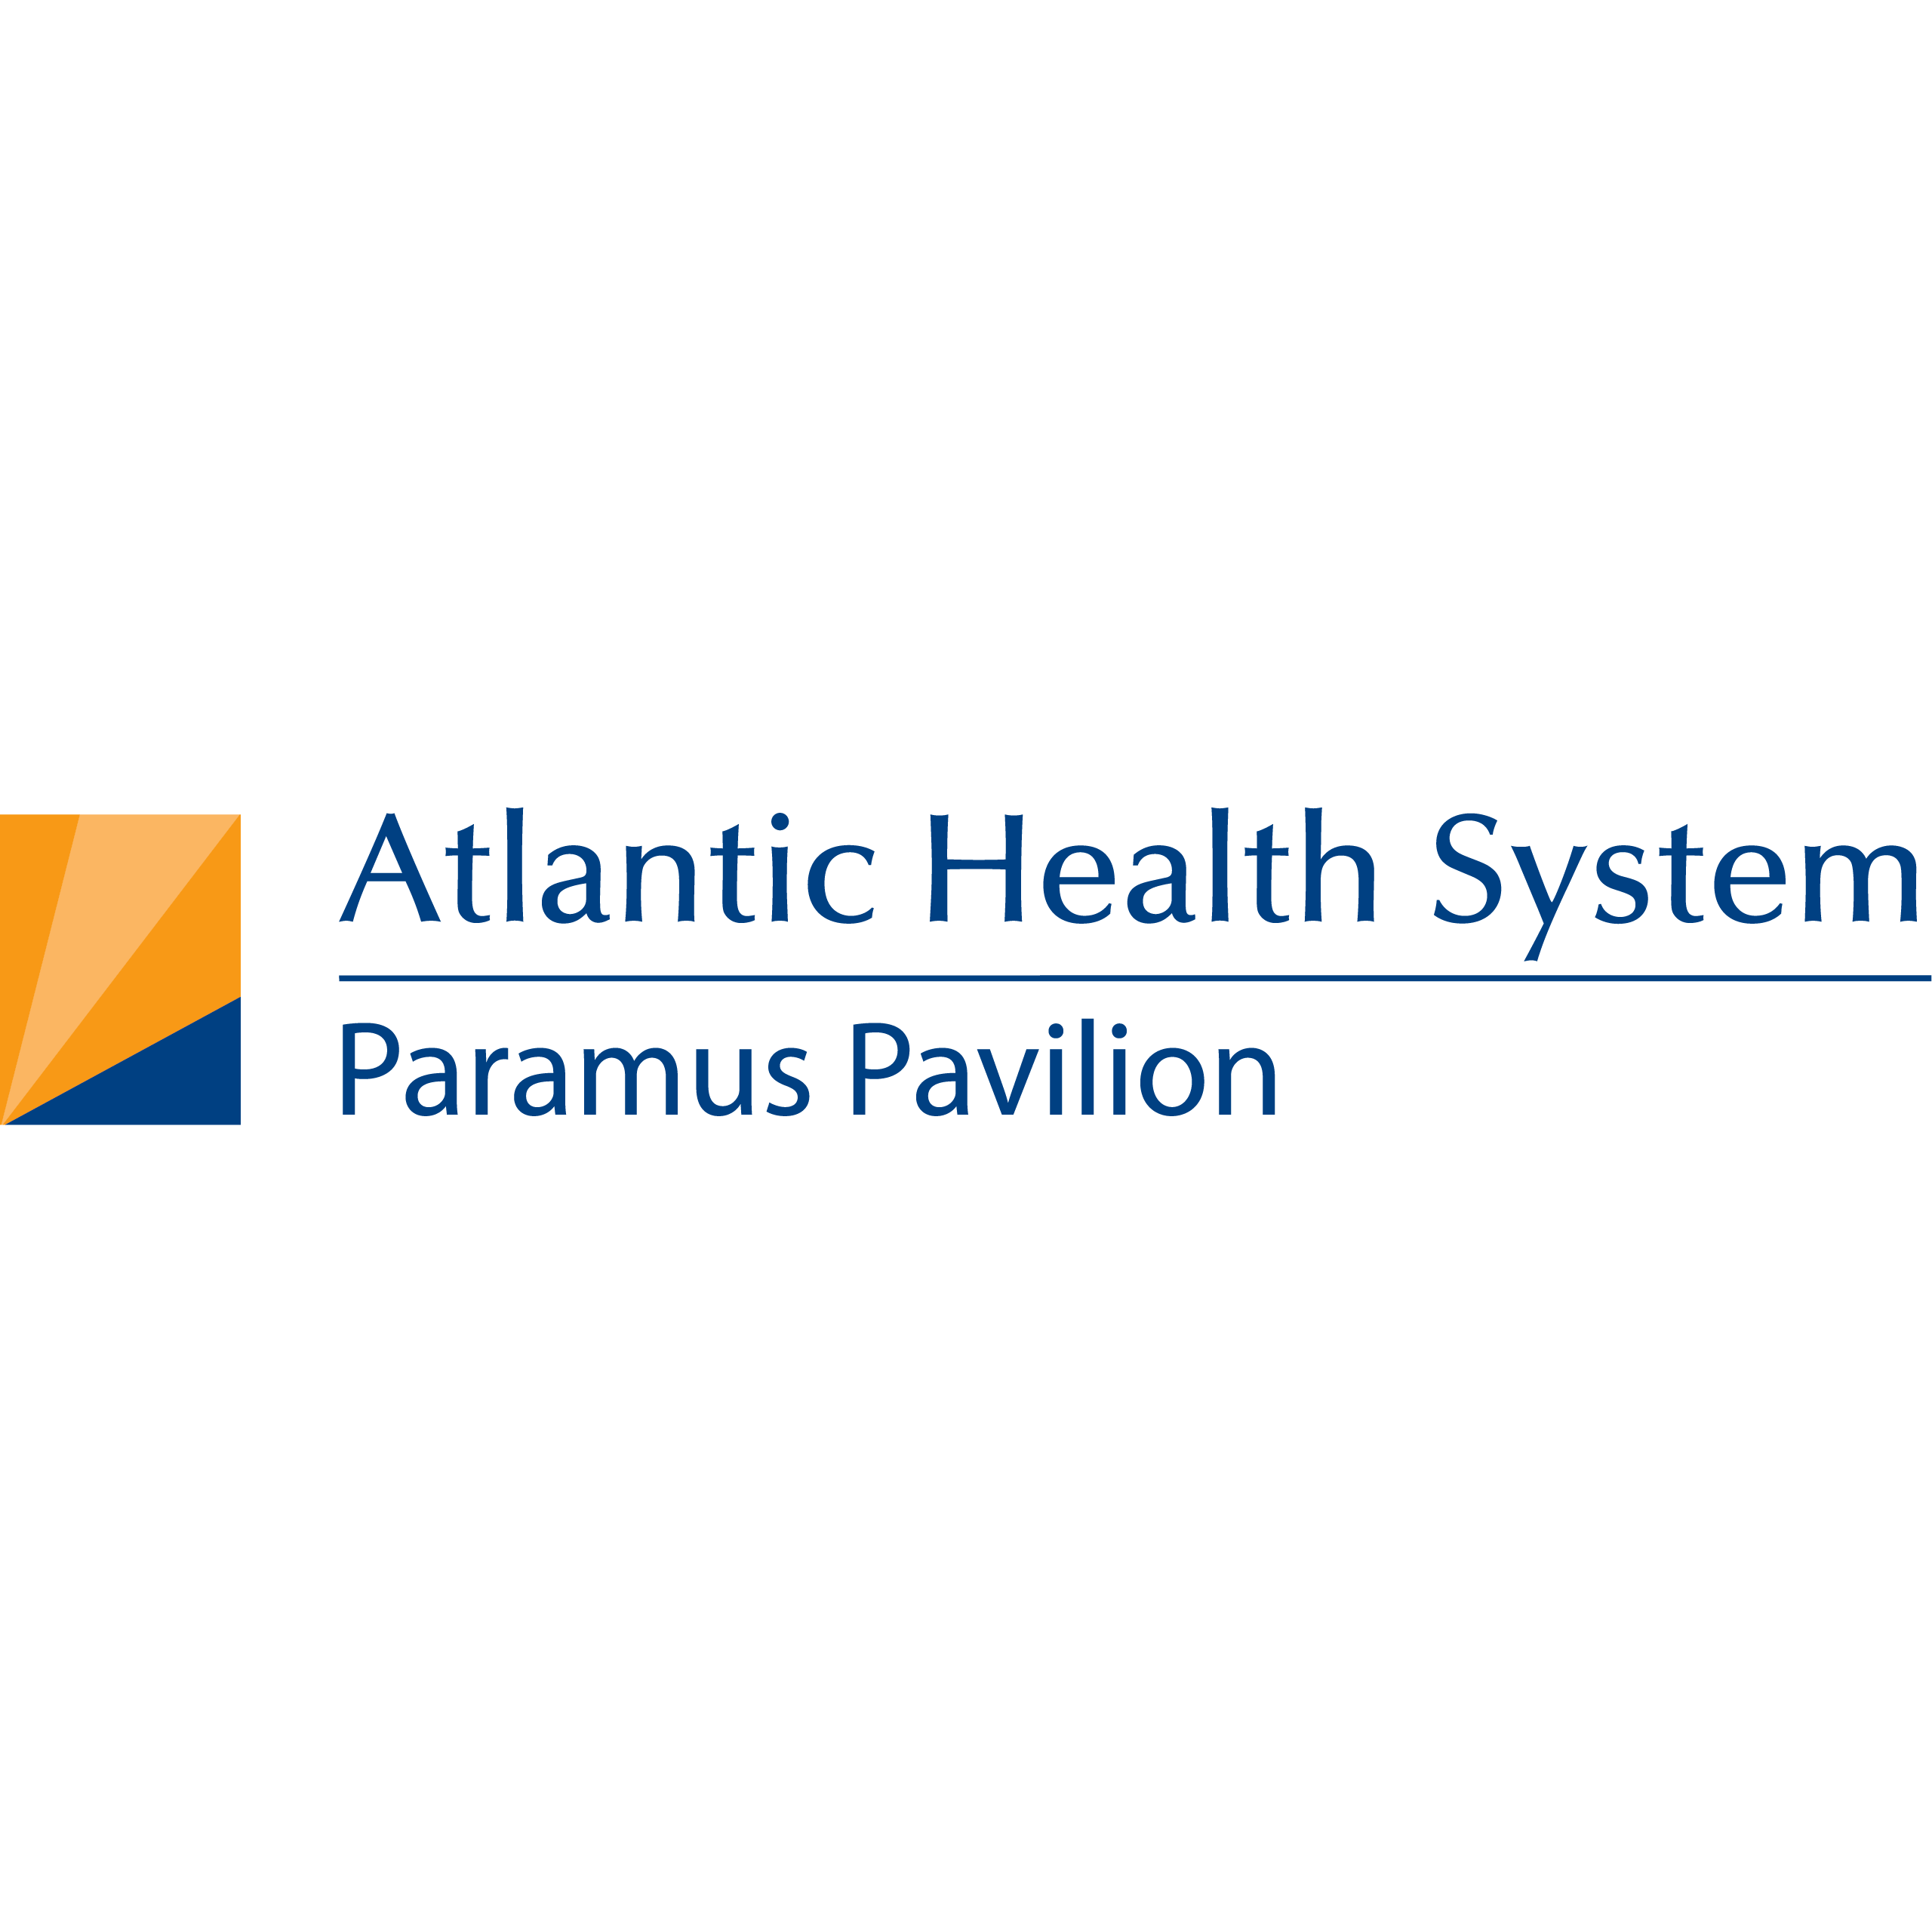 Atlantic Health System Paramus Pavilion